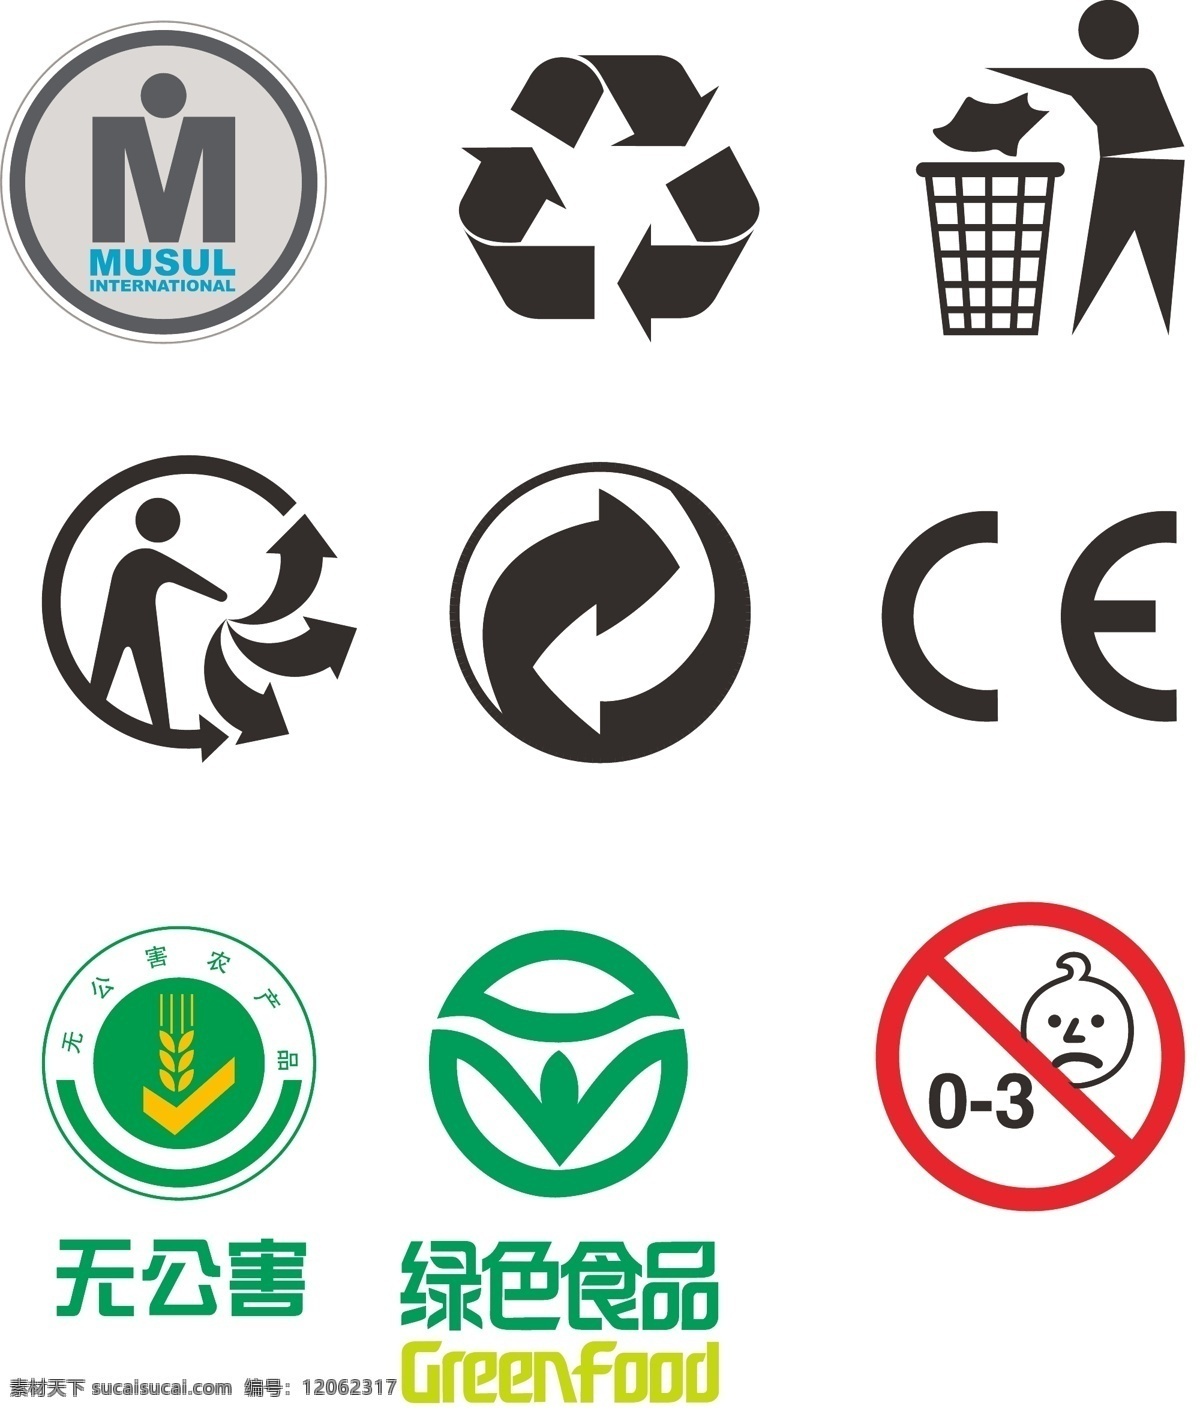 标志 绿色 回收 ce 无公害 无公害食品 绿色食品 musul 回收标志 循环使用 03小孩禁用 认证 标志大全 标识